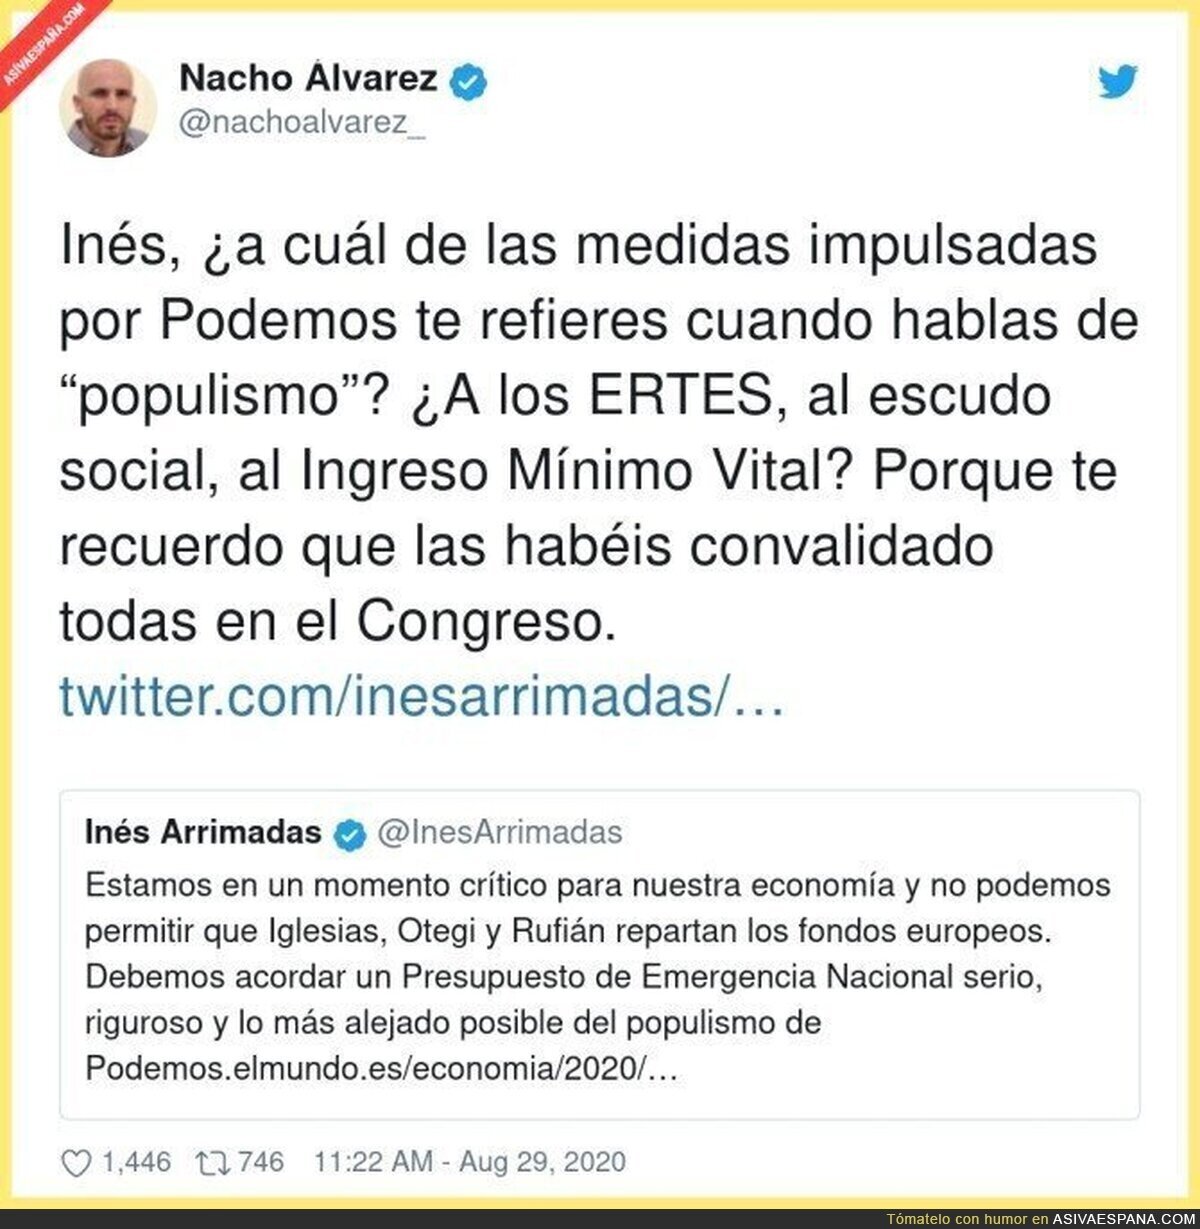 El verbo hecho zasca. Gran respuesta de Pablo Nacho Álvarez a Inés Arrimadas